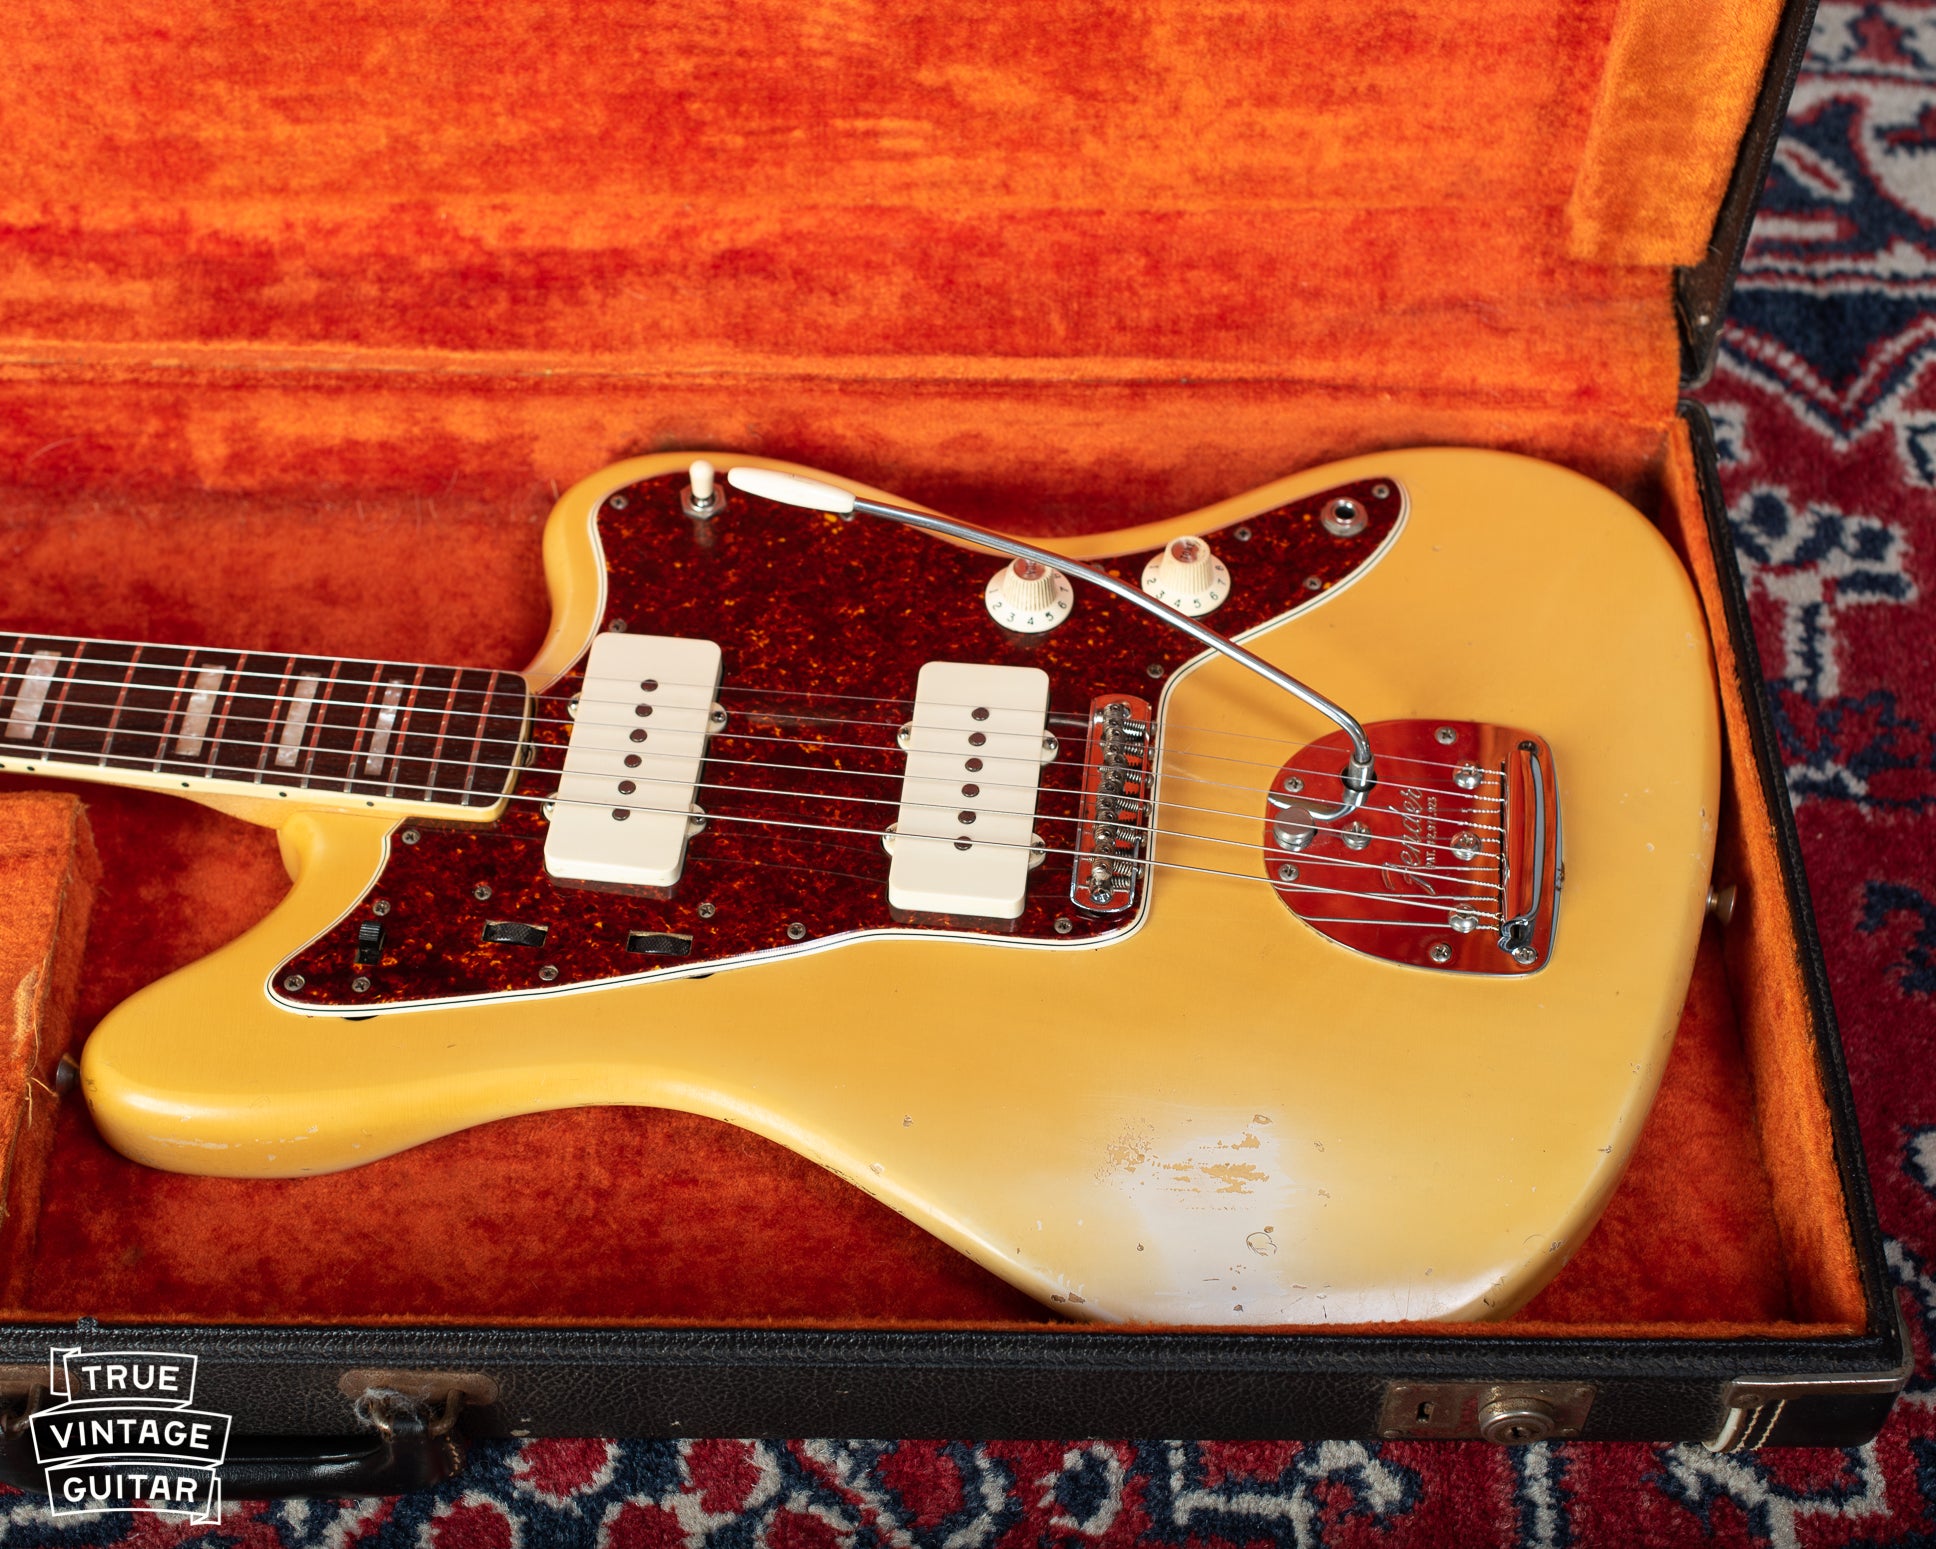 1967 Fender Jazzmaster Blond Ash custom color in original case